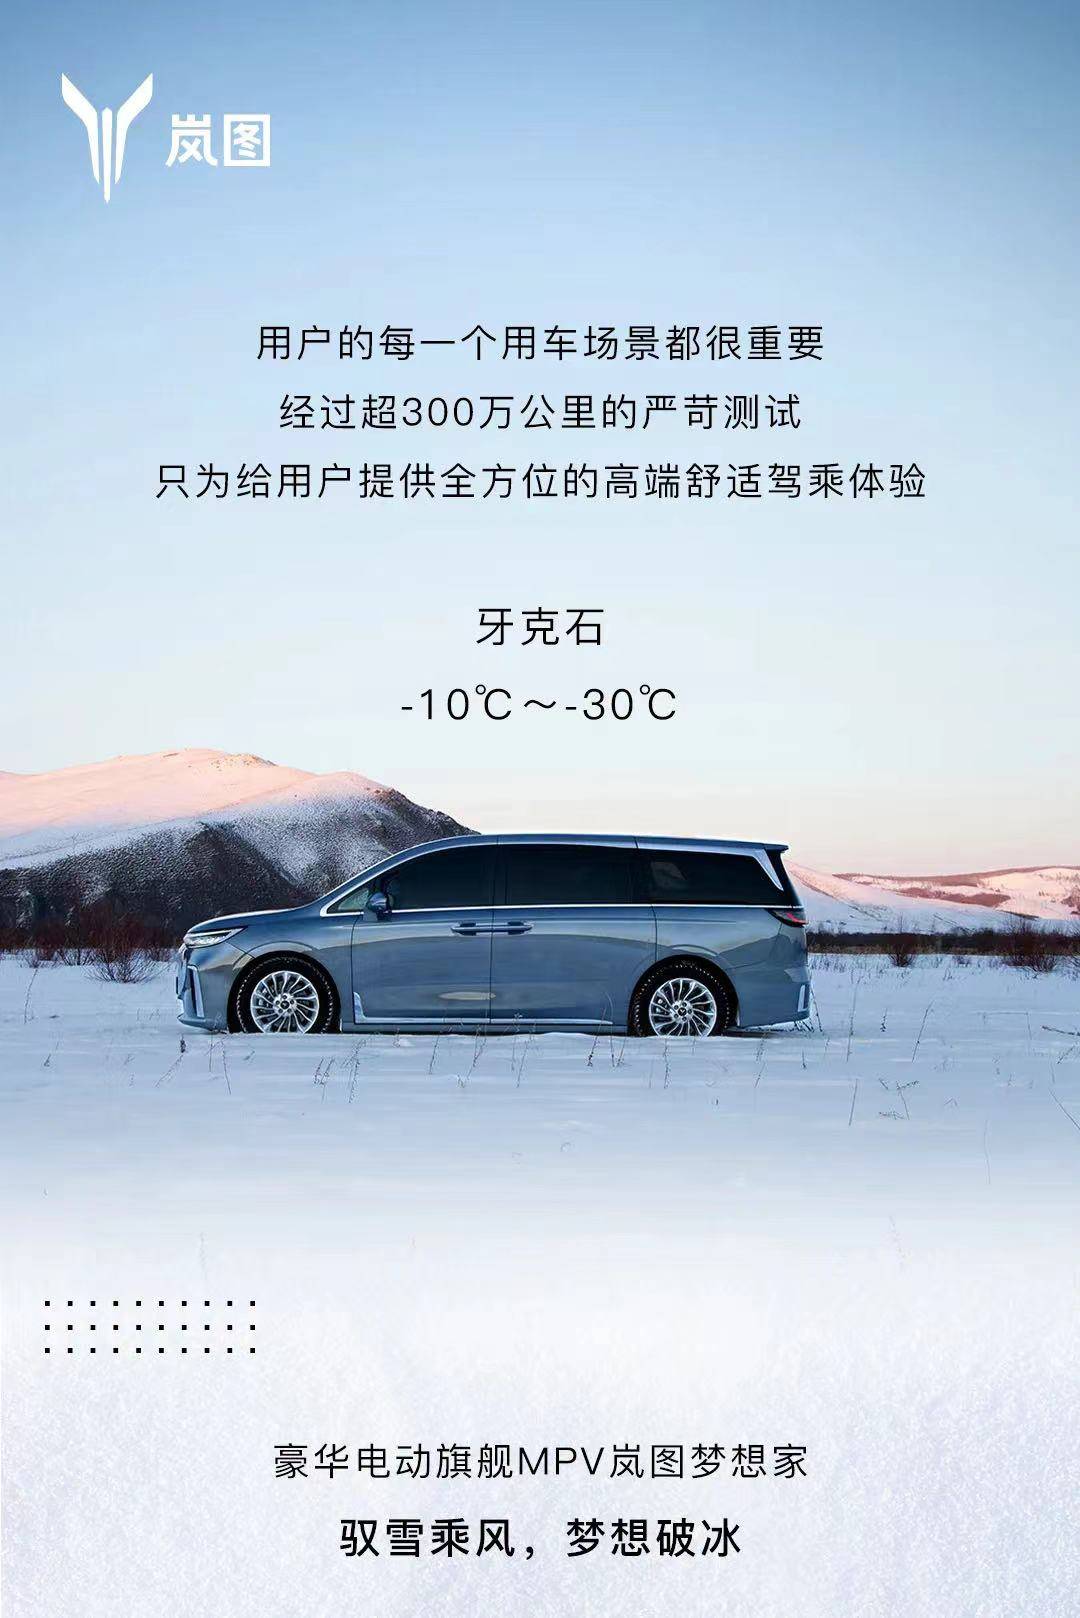 超300万公里路程 岚图梦想家完成冬季高寒测试